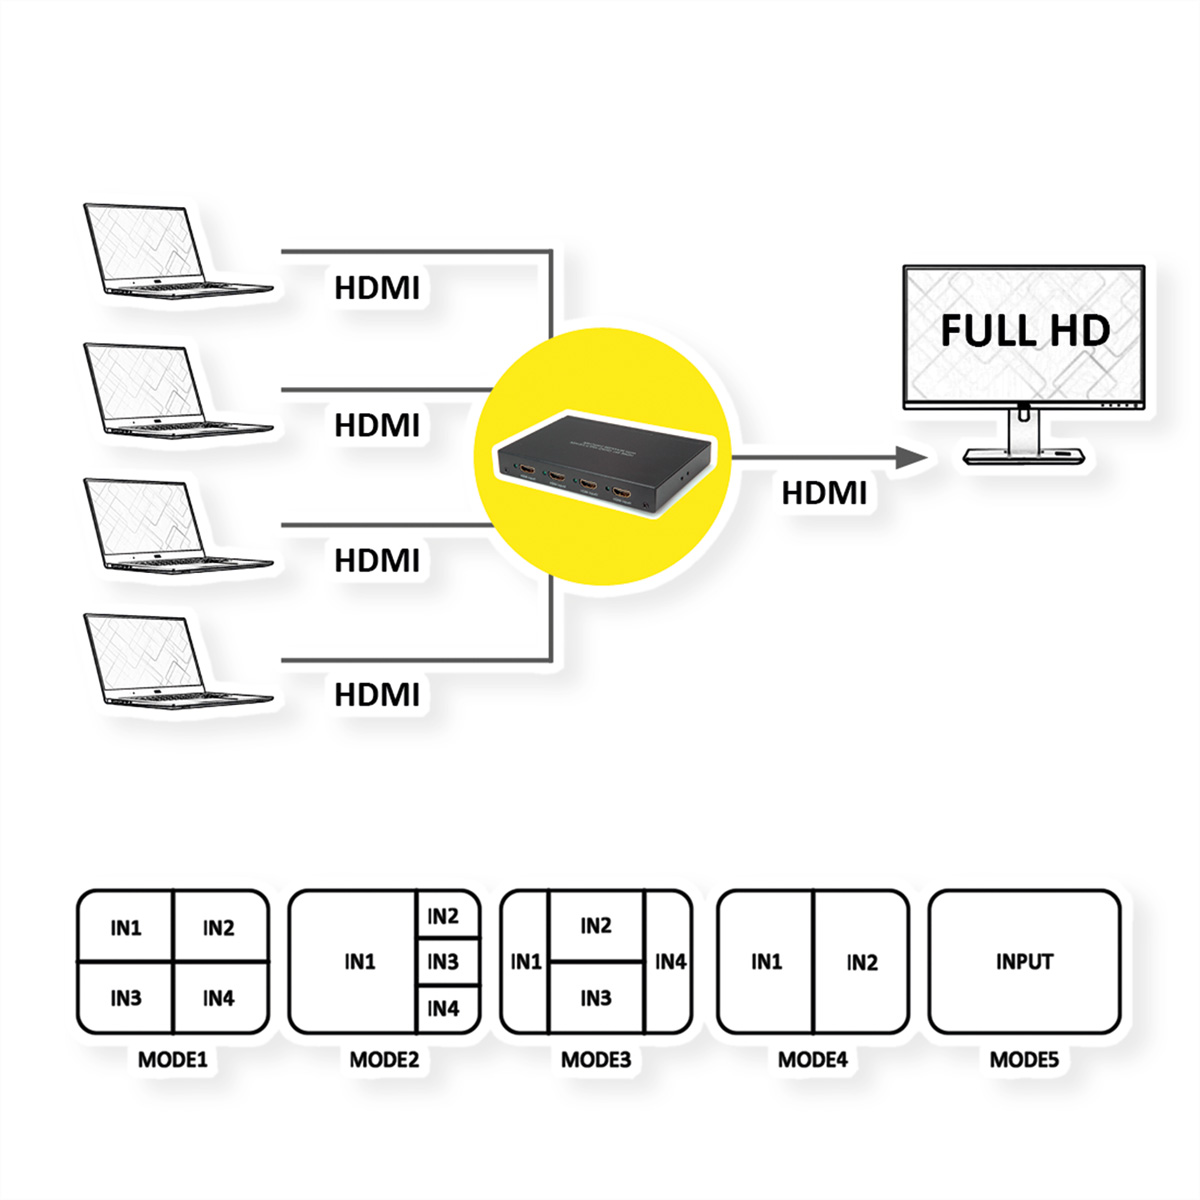 HDMI-Video-Switch Switch, QUAD ROLINE Multi-Viewer nahtlose HDMI Umschaltung 4x1